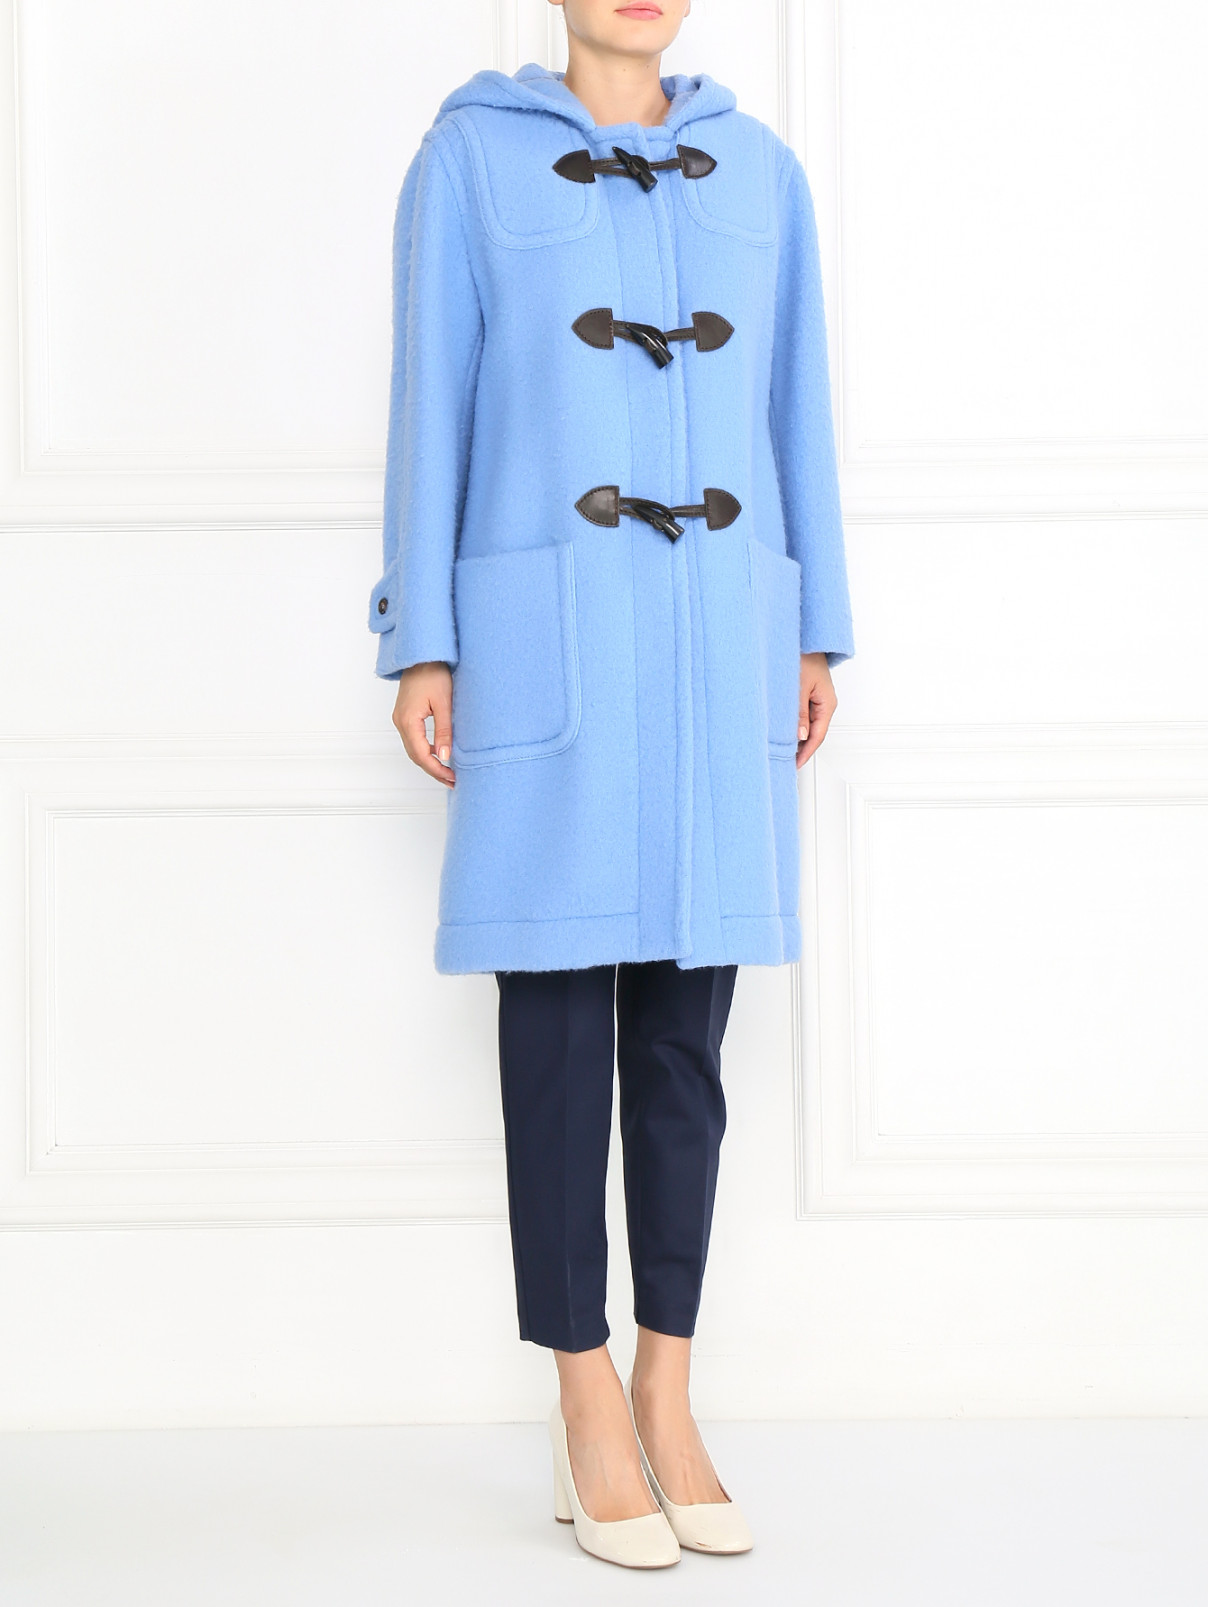 Пальто из шерсти с капюшоном и декоративными пуговицами Moschino Couture  –  Модель Общий вид  – Цвет:  Синий